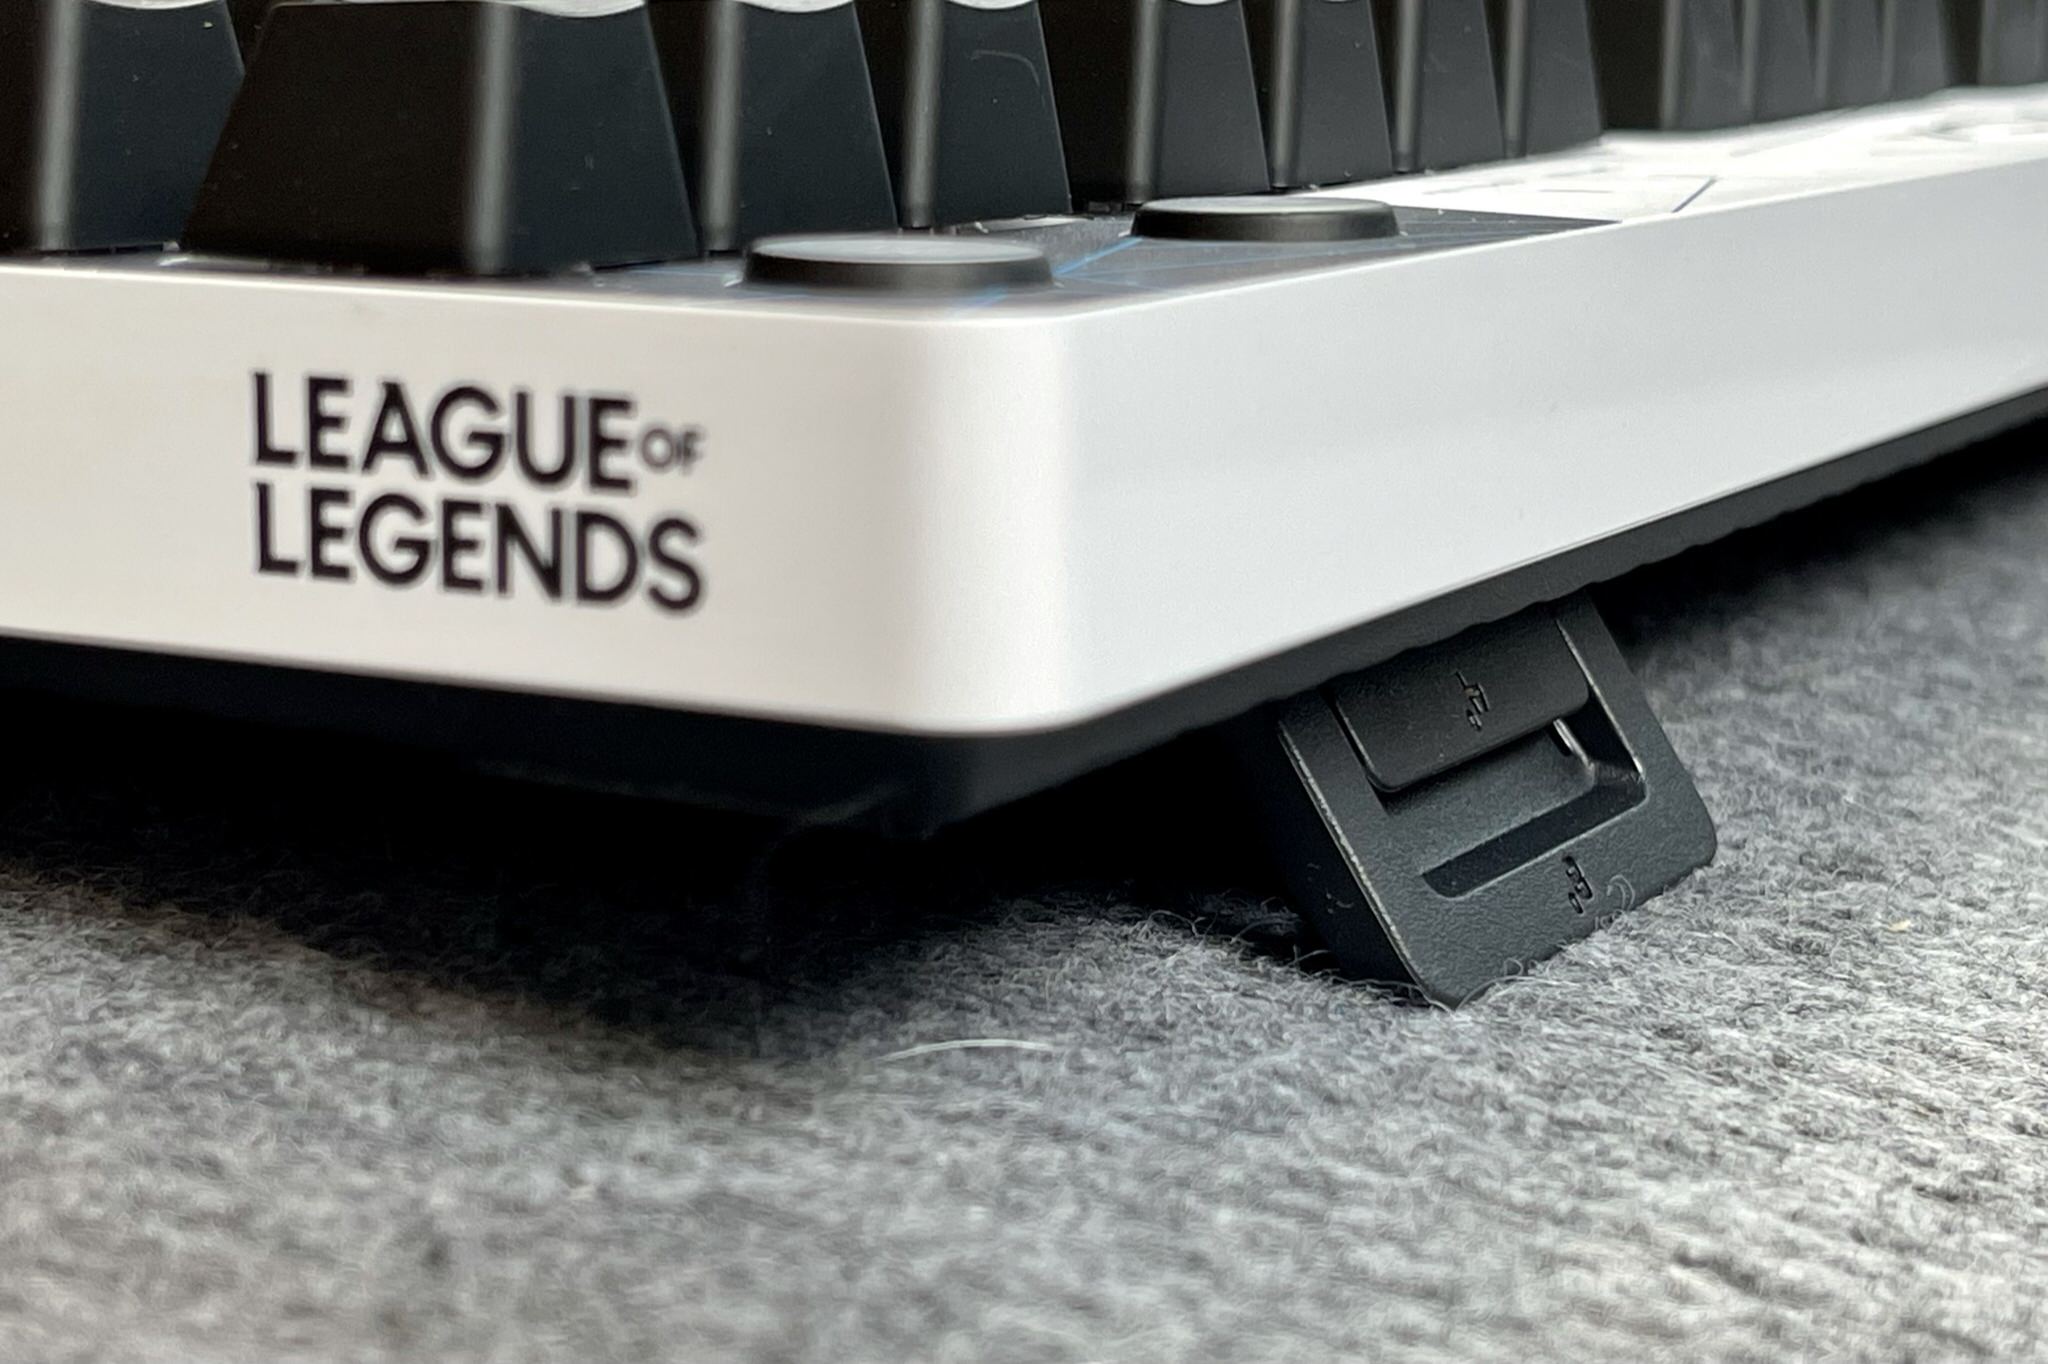 Trải nghiệm trọn bộ gaming gear League of Legends K/DA từ Logitech: Đẹp mắt và đầy phong cách, nhiều tính năng tối ưu cho game thủ